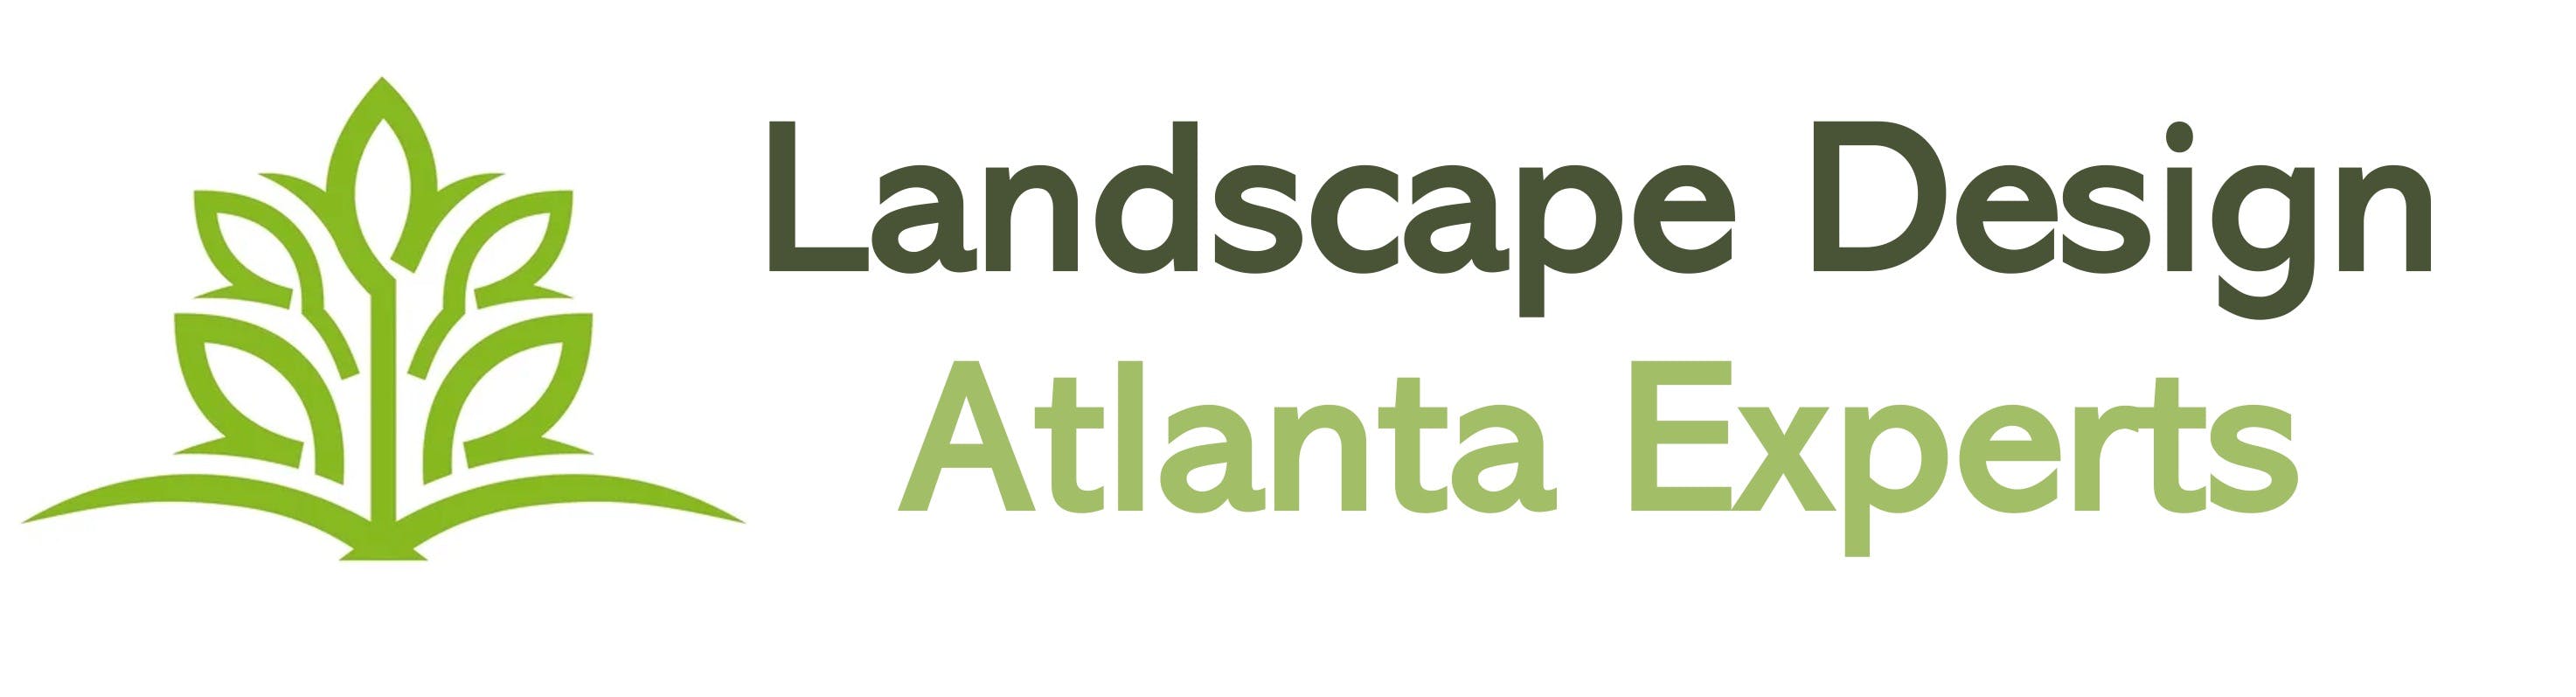 Landscape Design Atlanta Experts logo